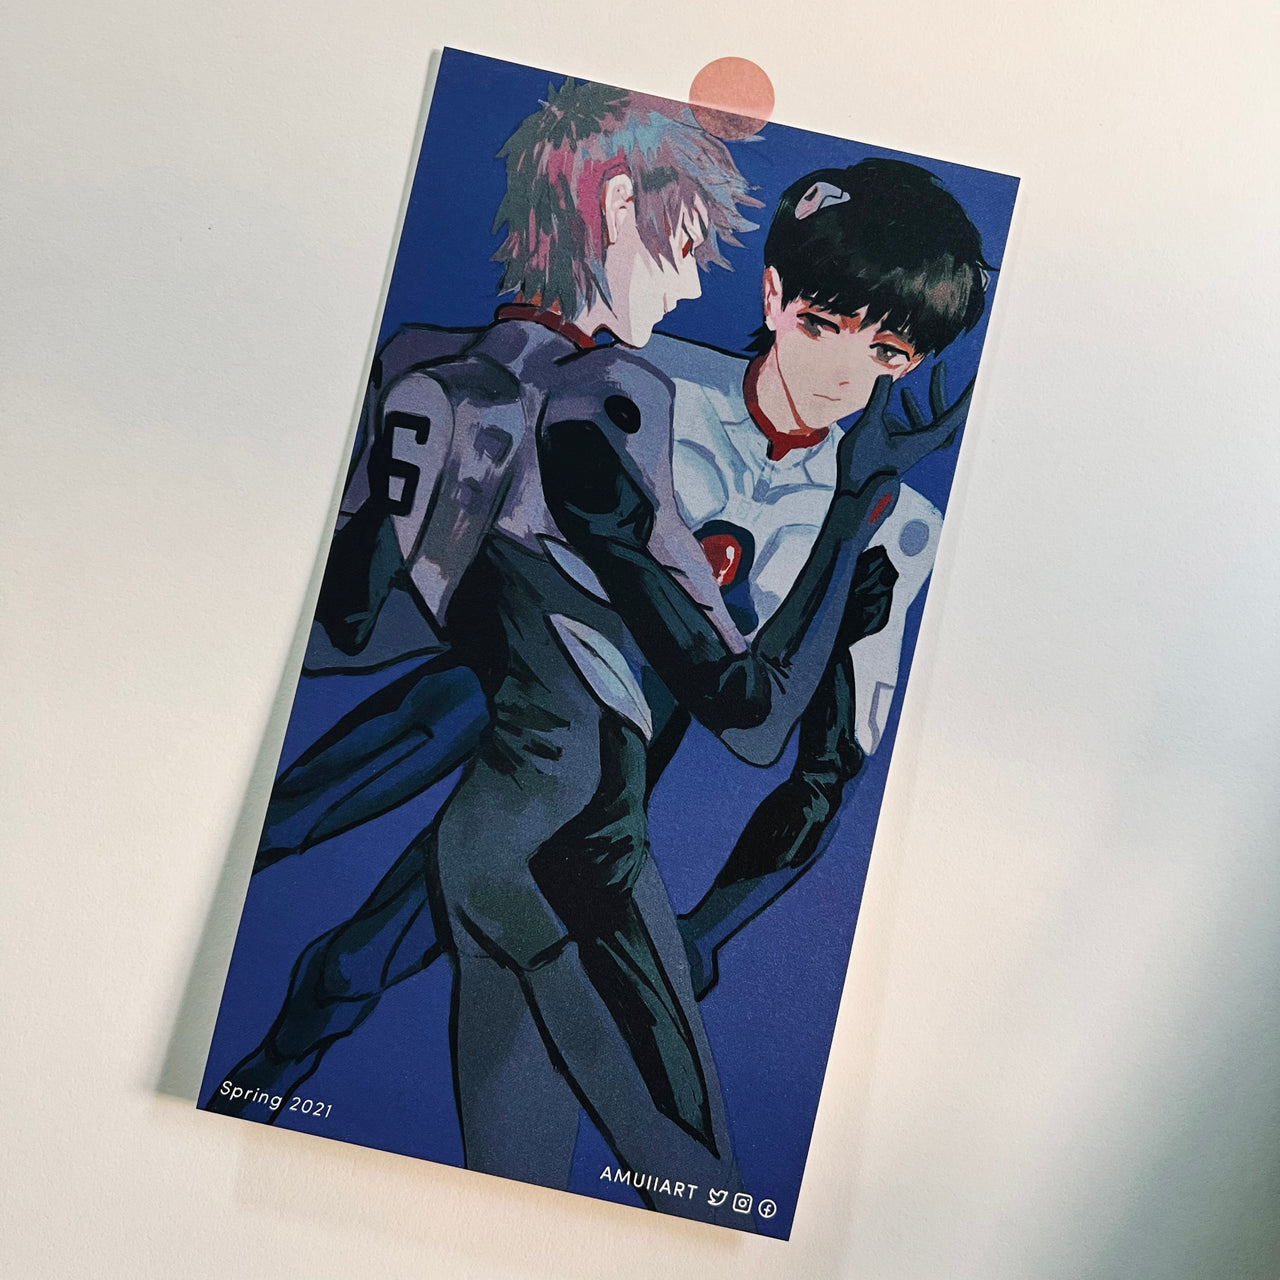 13 / Kaworu & Shinji Art print